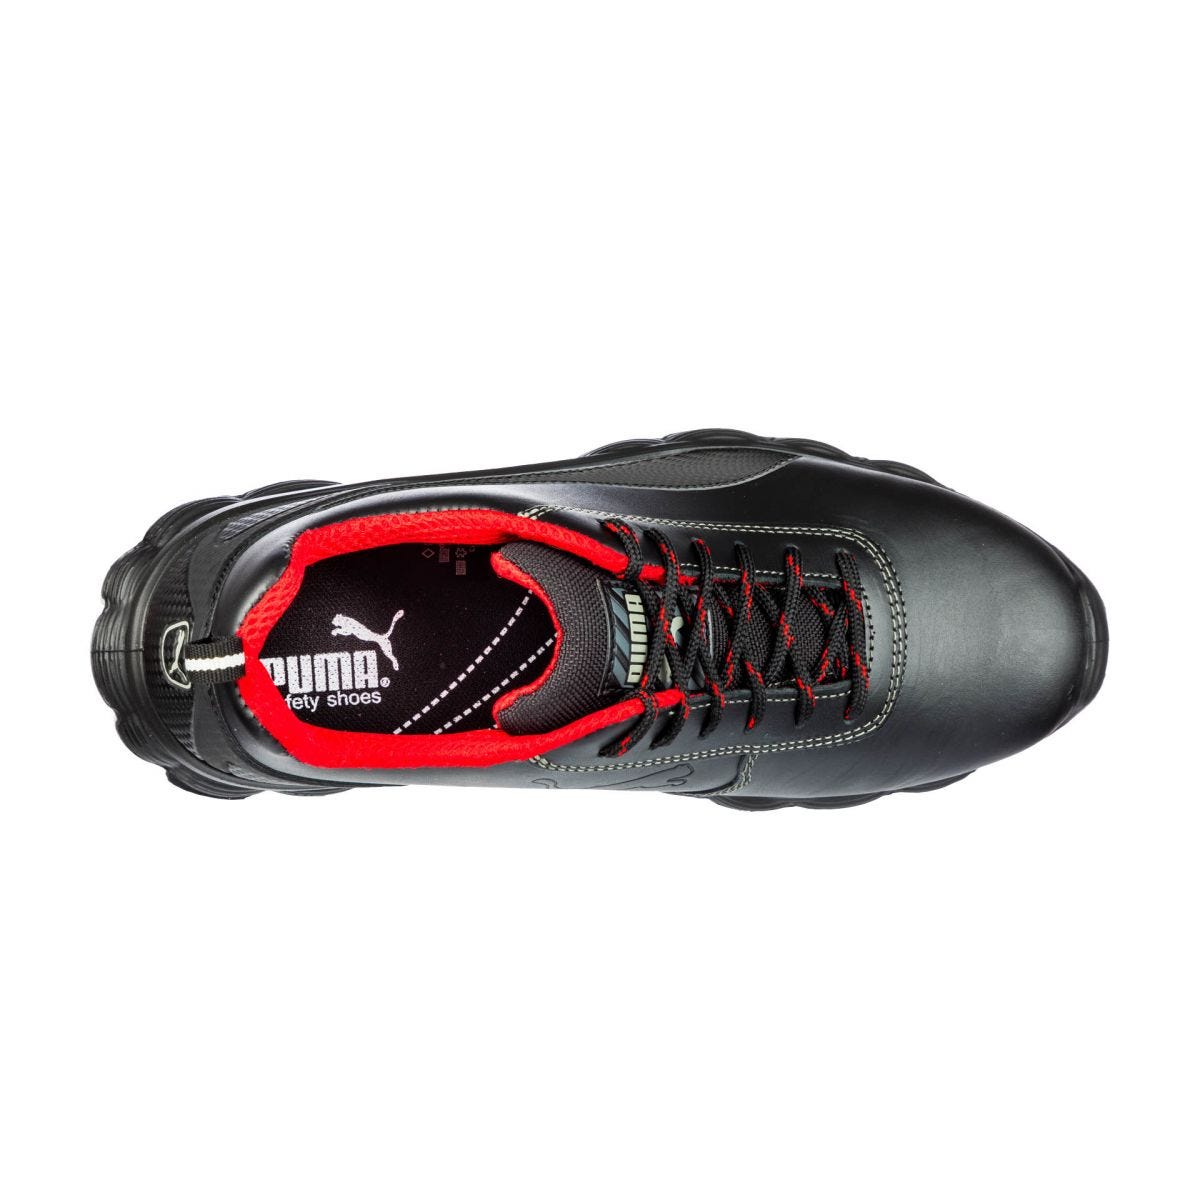 Chaussures de sécurité Condor low S3 ESD SRC noir - Puma - Taille 47 1